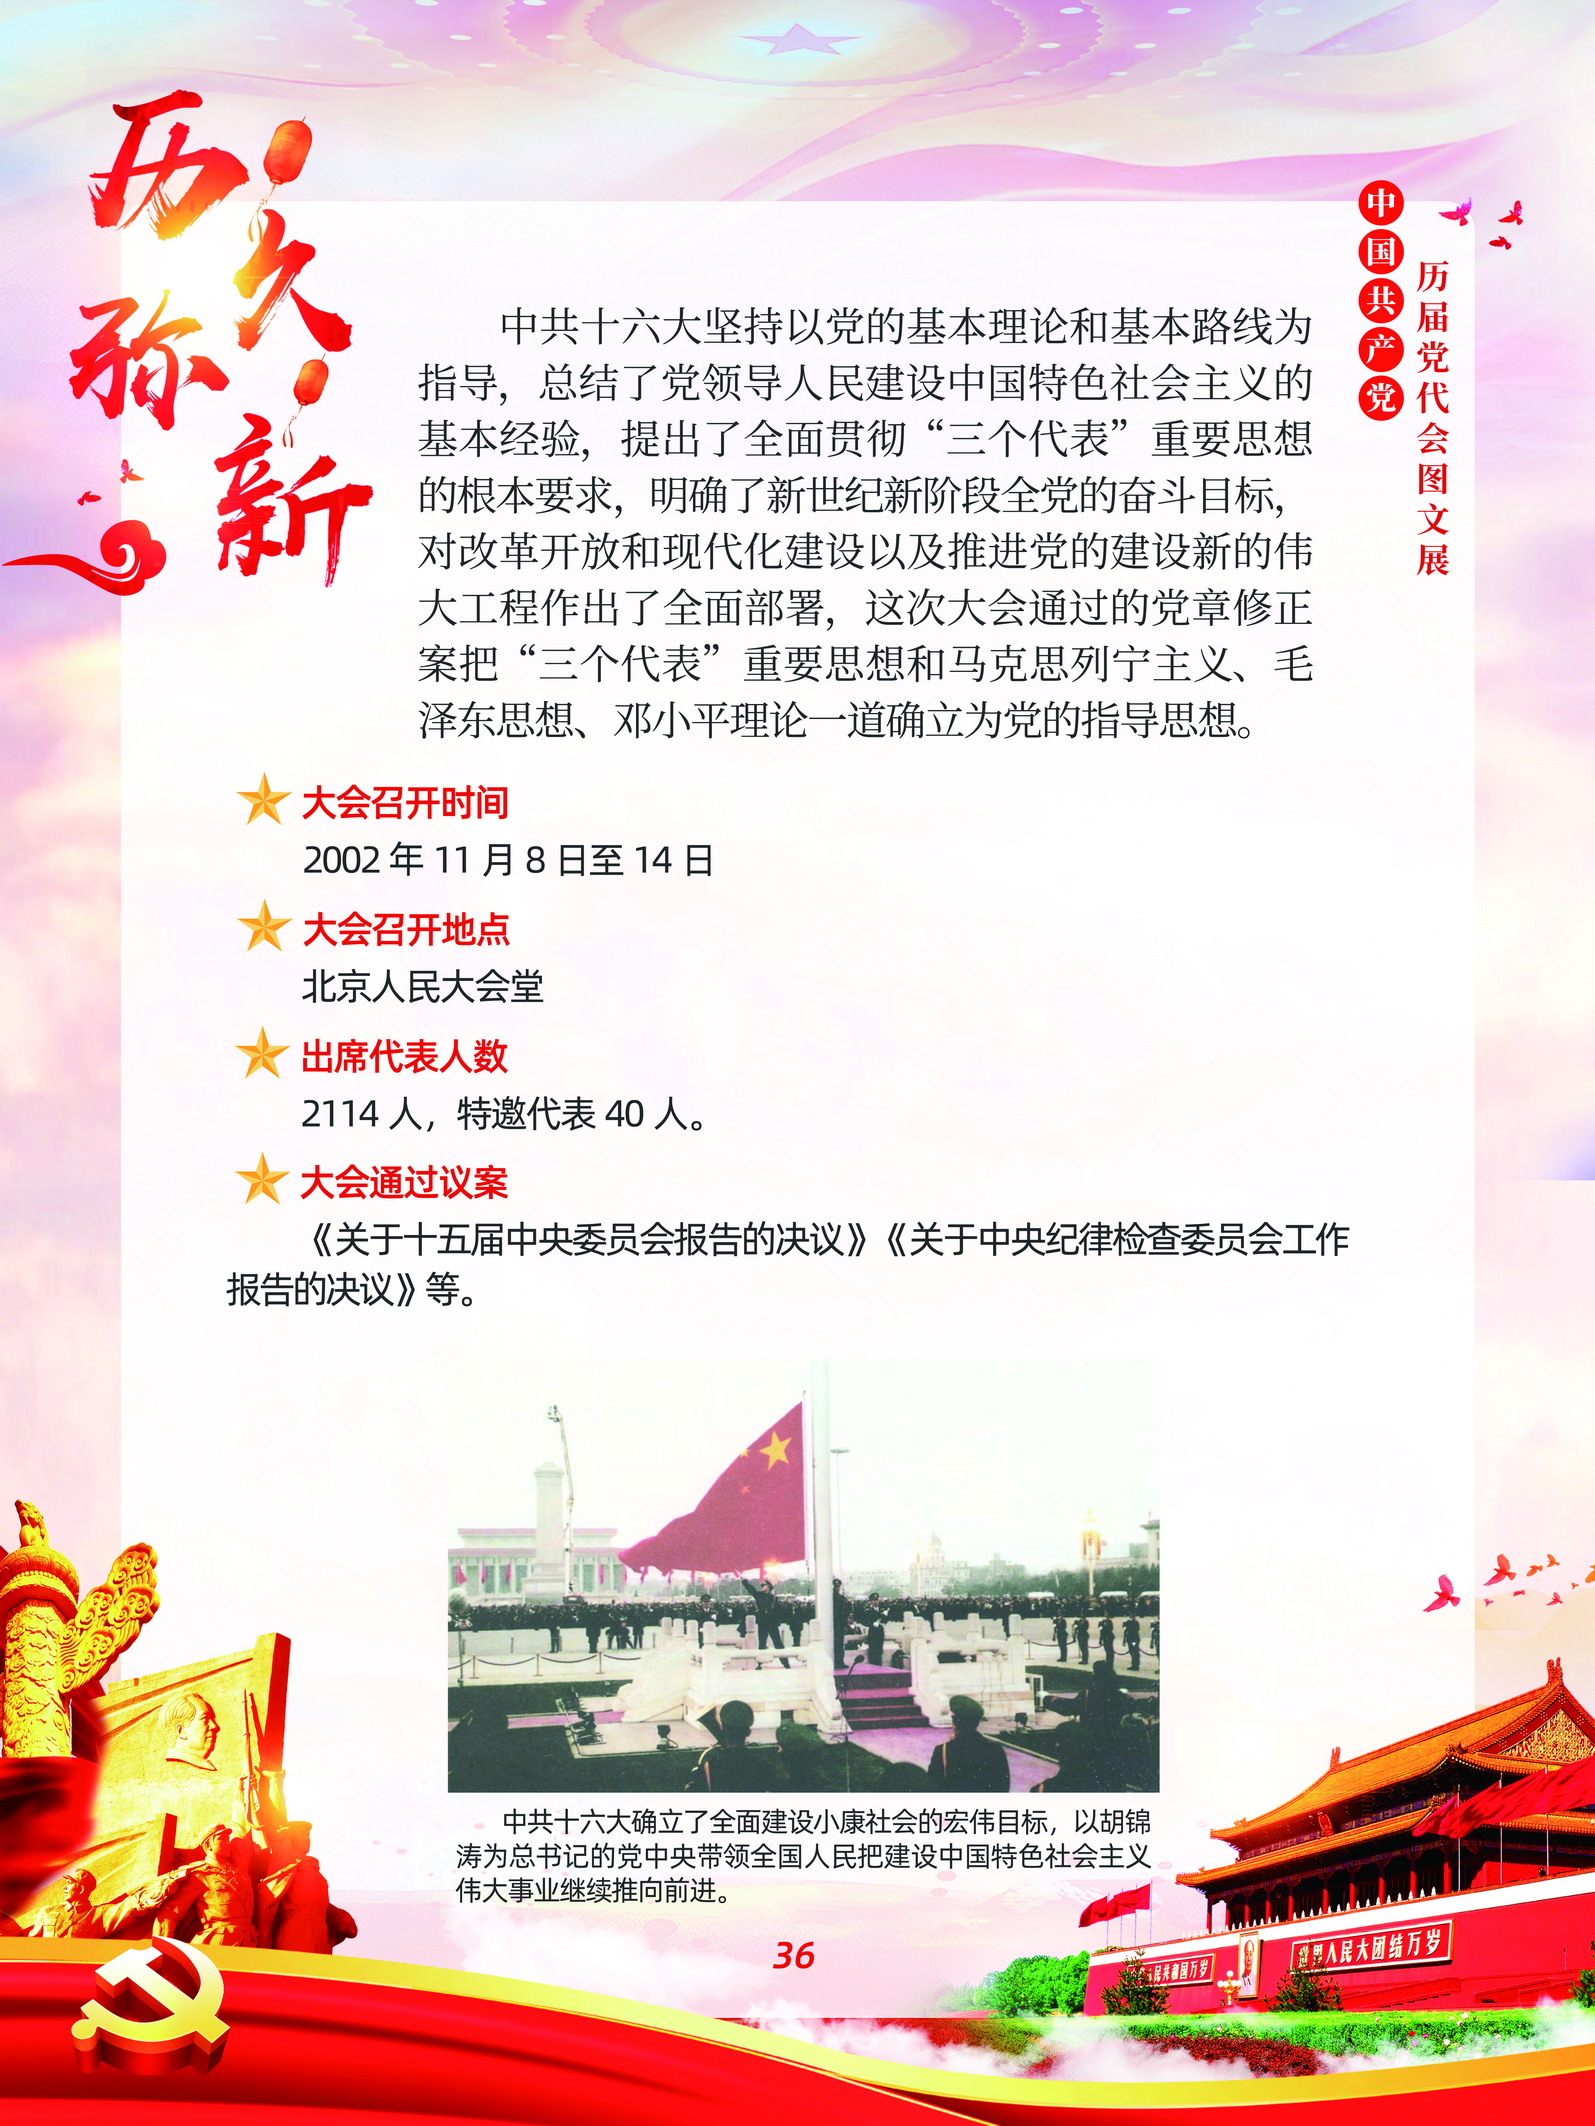 中国共产党历届党代会图文展_图35